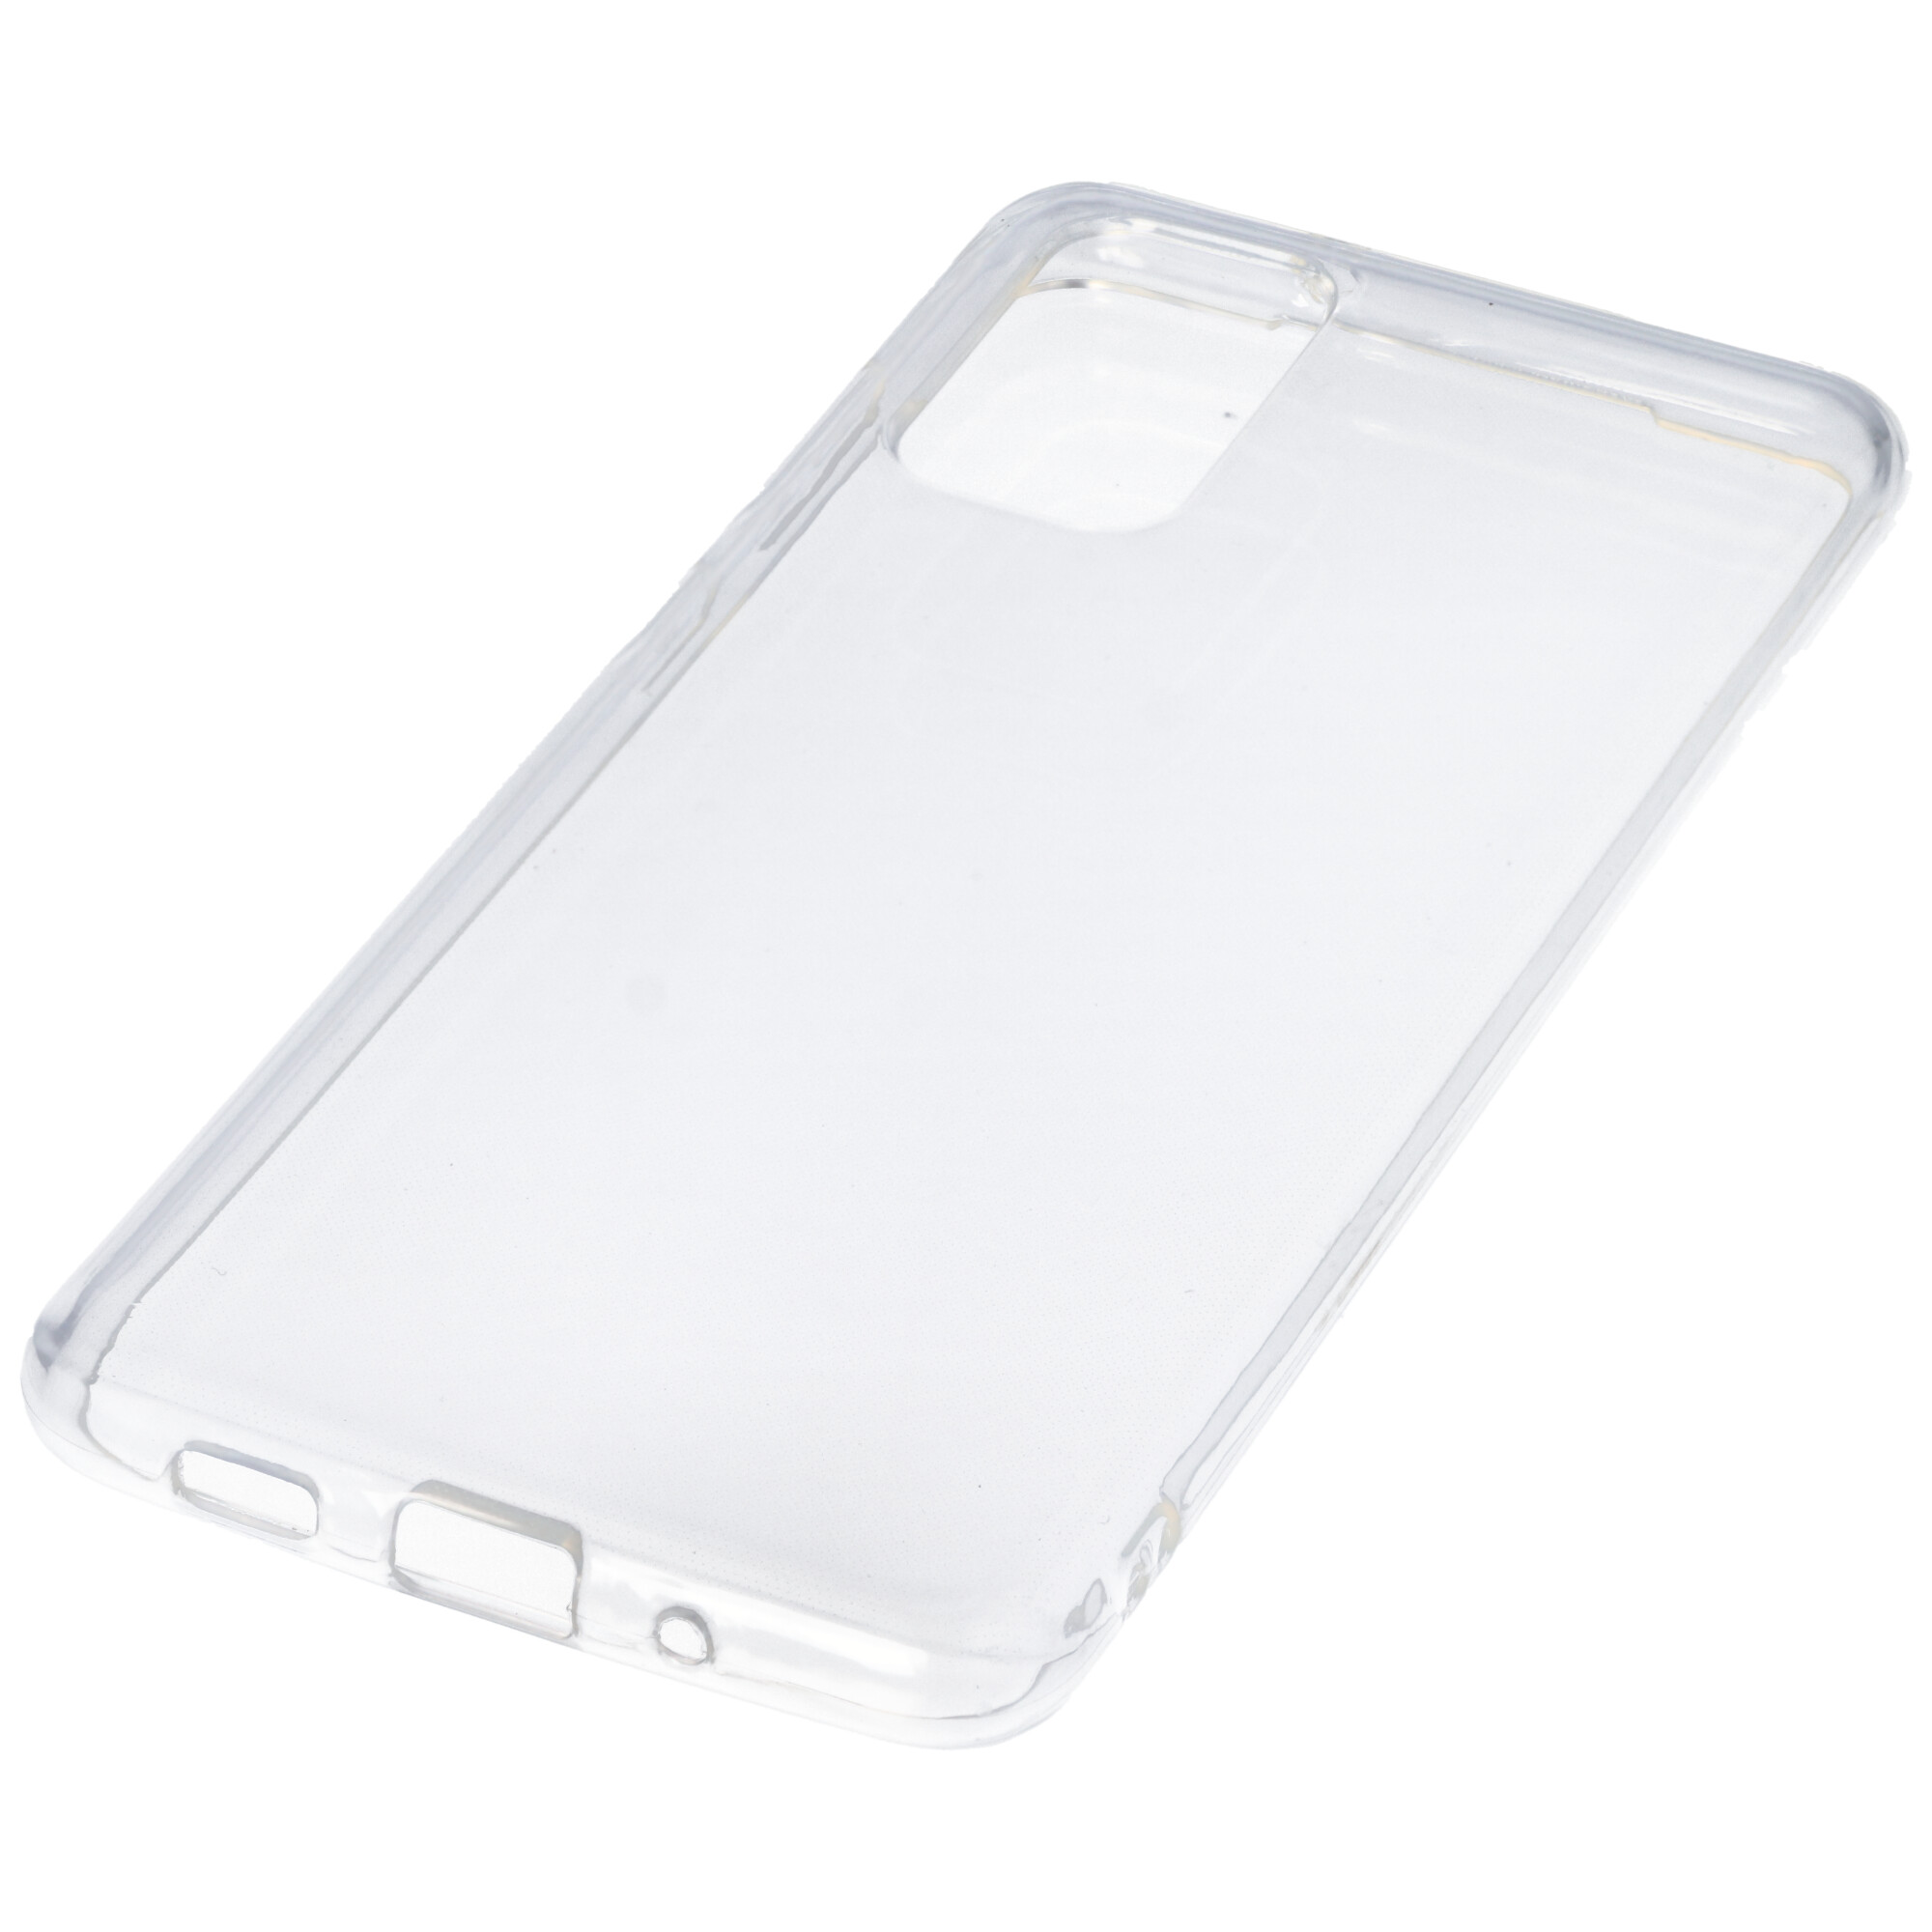 Hülle passend für Samsung Galaxy S20 Plus - transparente Schutzhülle, Anti-Gelb Luftkissen Fallschutz Silikon Handyhülle robustes TPU Case